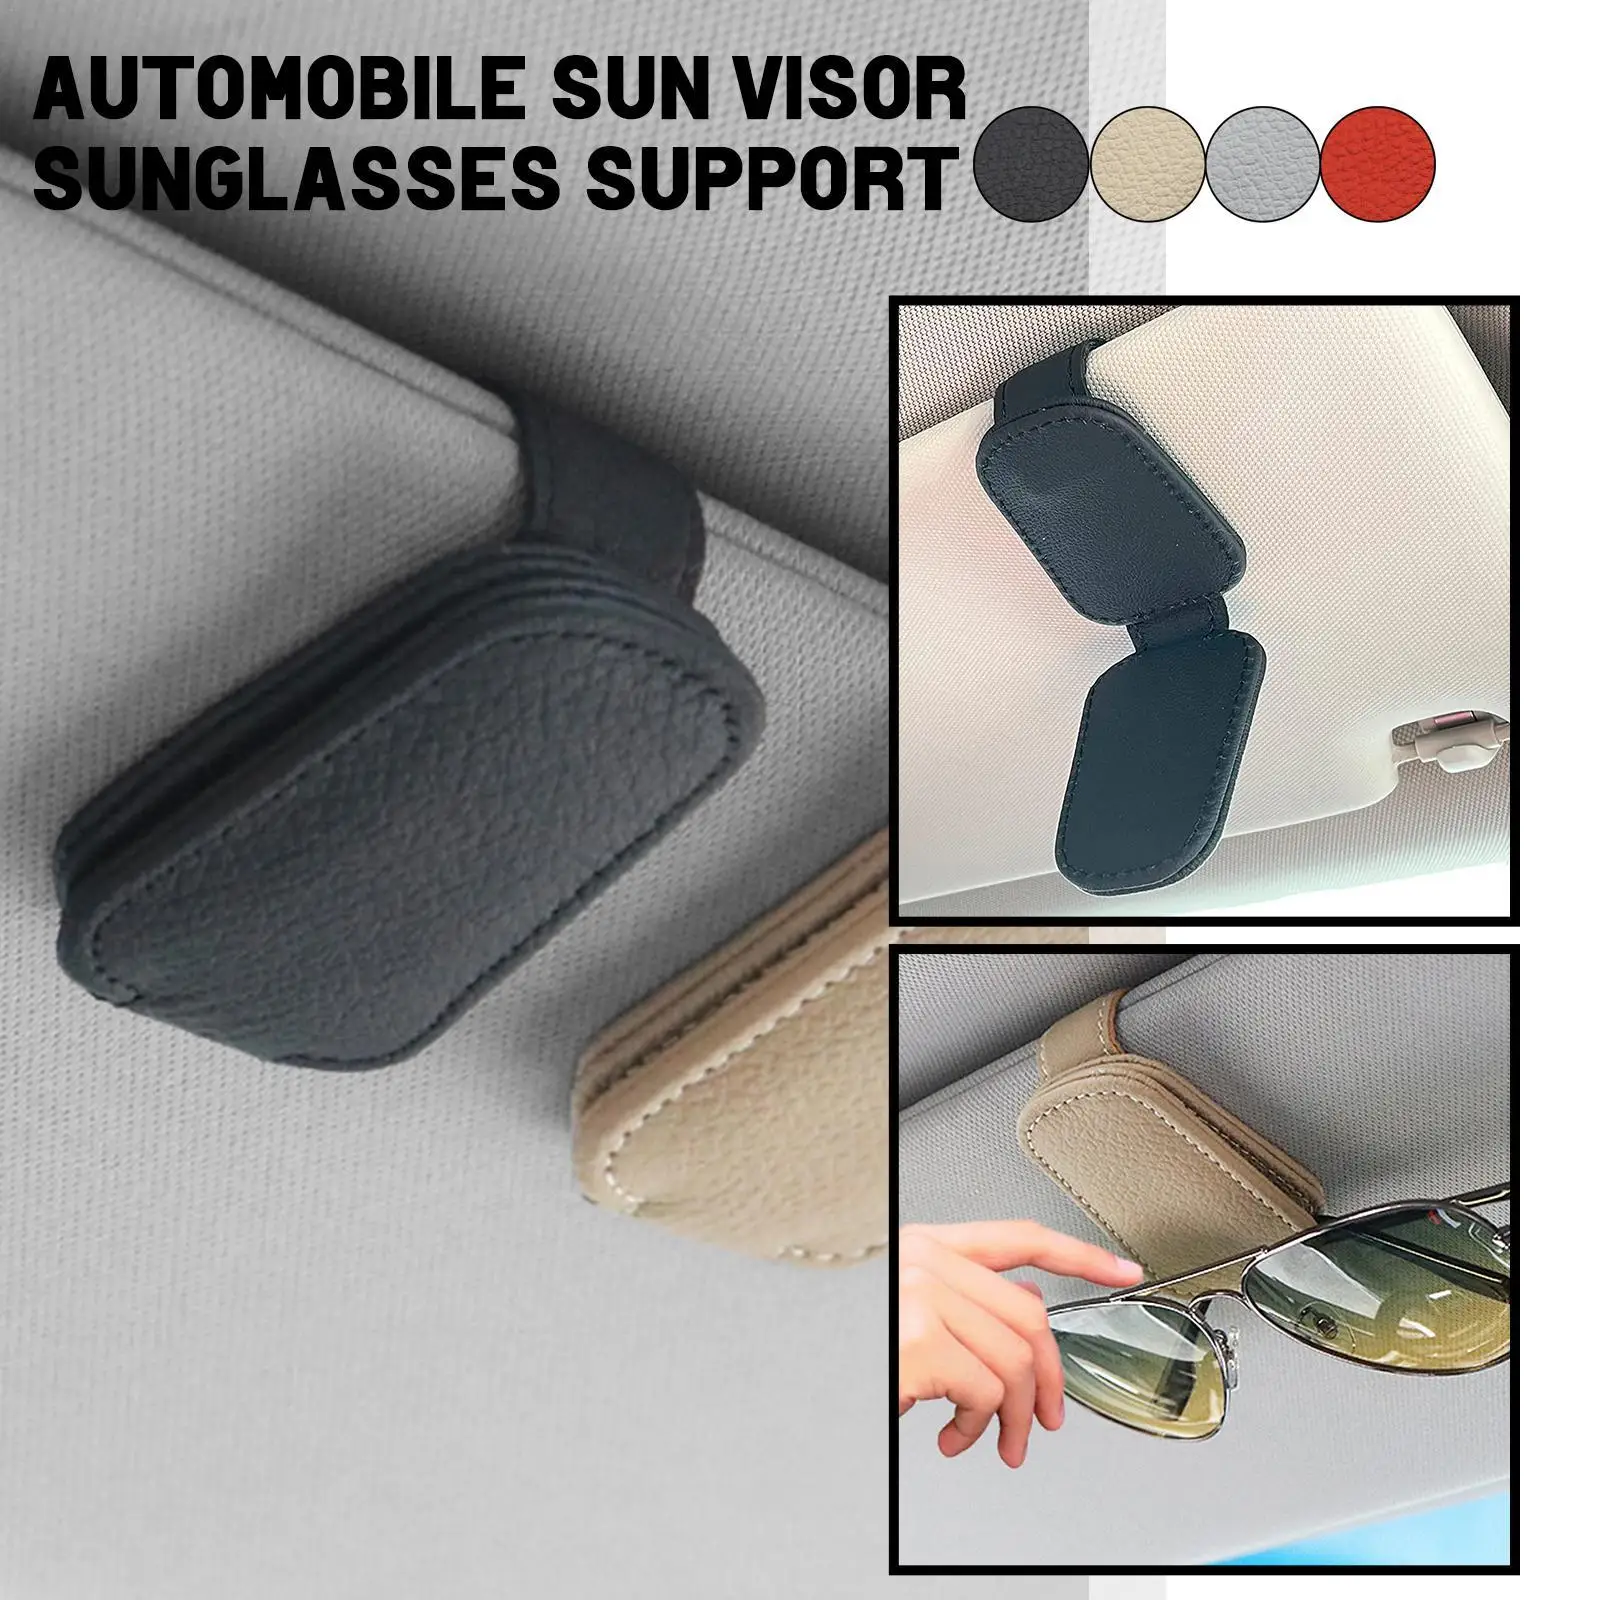 

Универсальный подвесной защитный практичный Автомобильный держатель для очков крепкий магнит зажим для солнцезащитных очков женский солнцезащитный козырек Экономия места